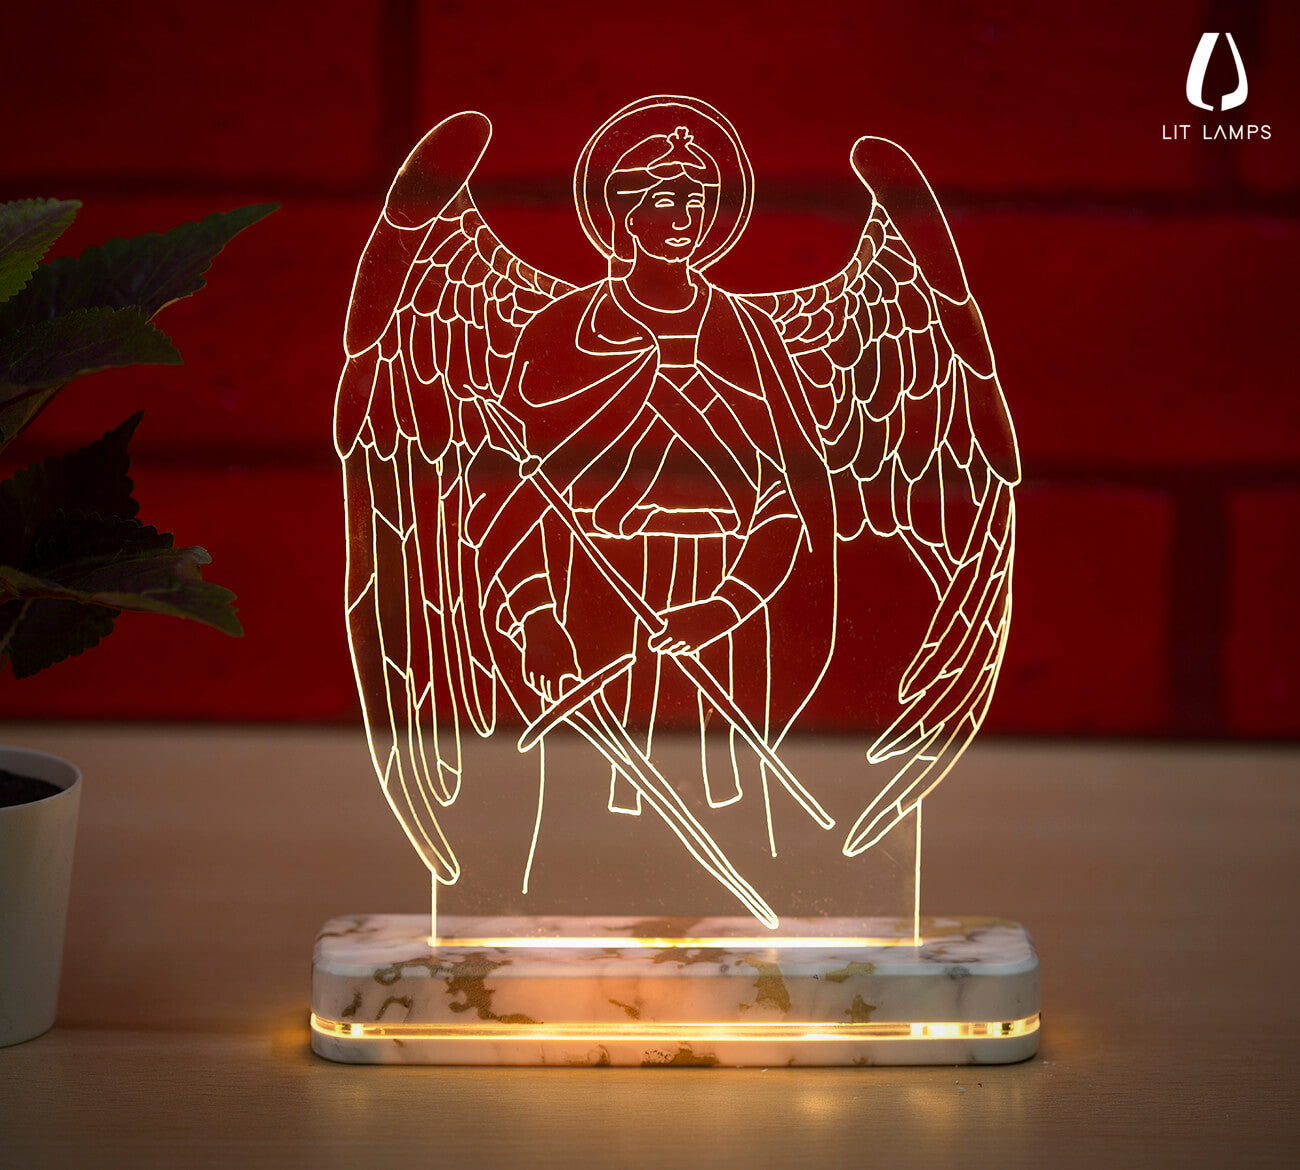 Saint Michael The Archangel Christians lighting Decoration LIT 3D Illusion Lamp - LIT Lamps - Saint Michael The Archangel 3D LED Lamp-3d Lamps